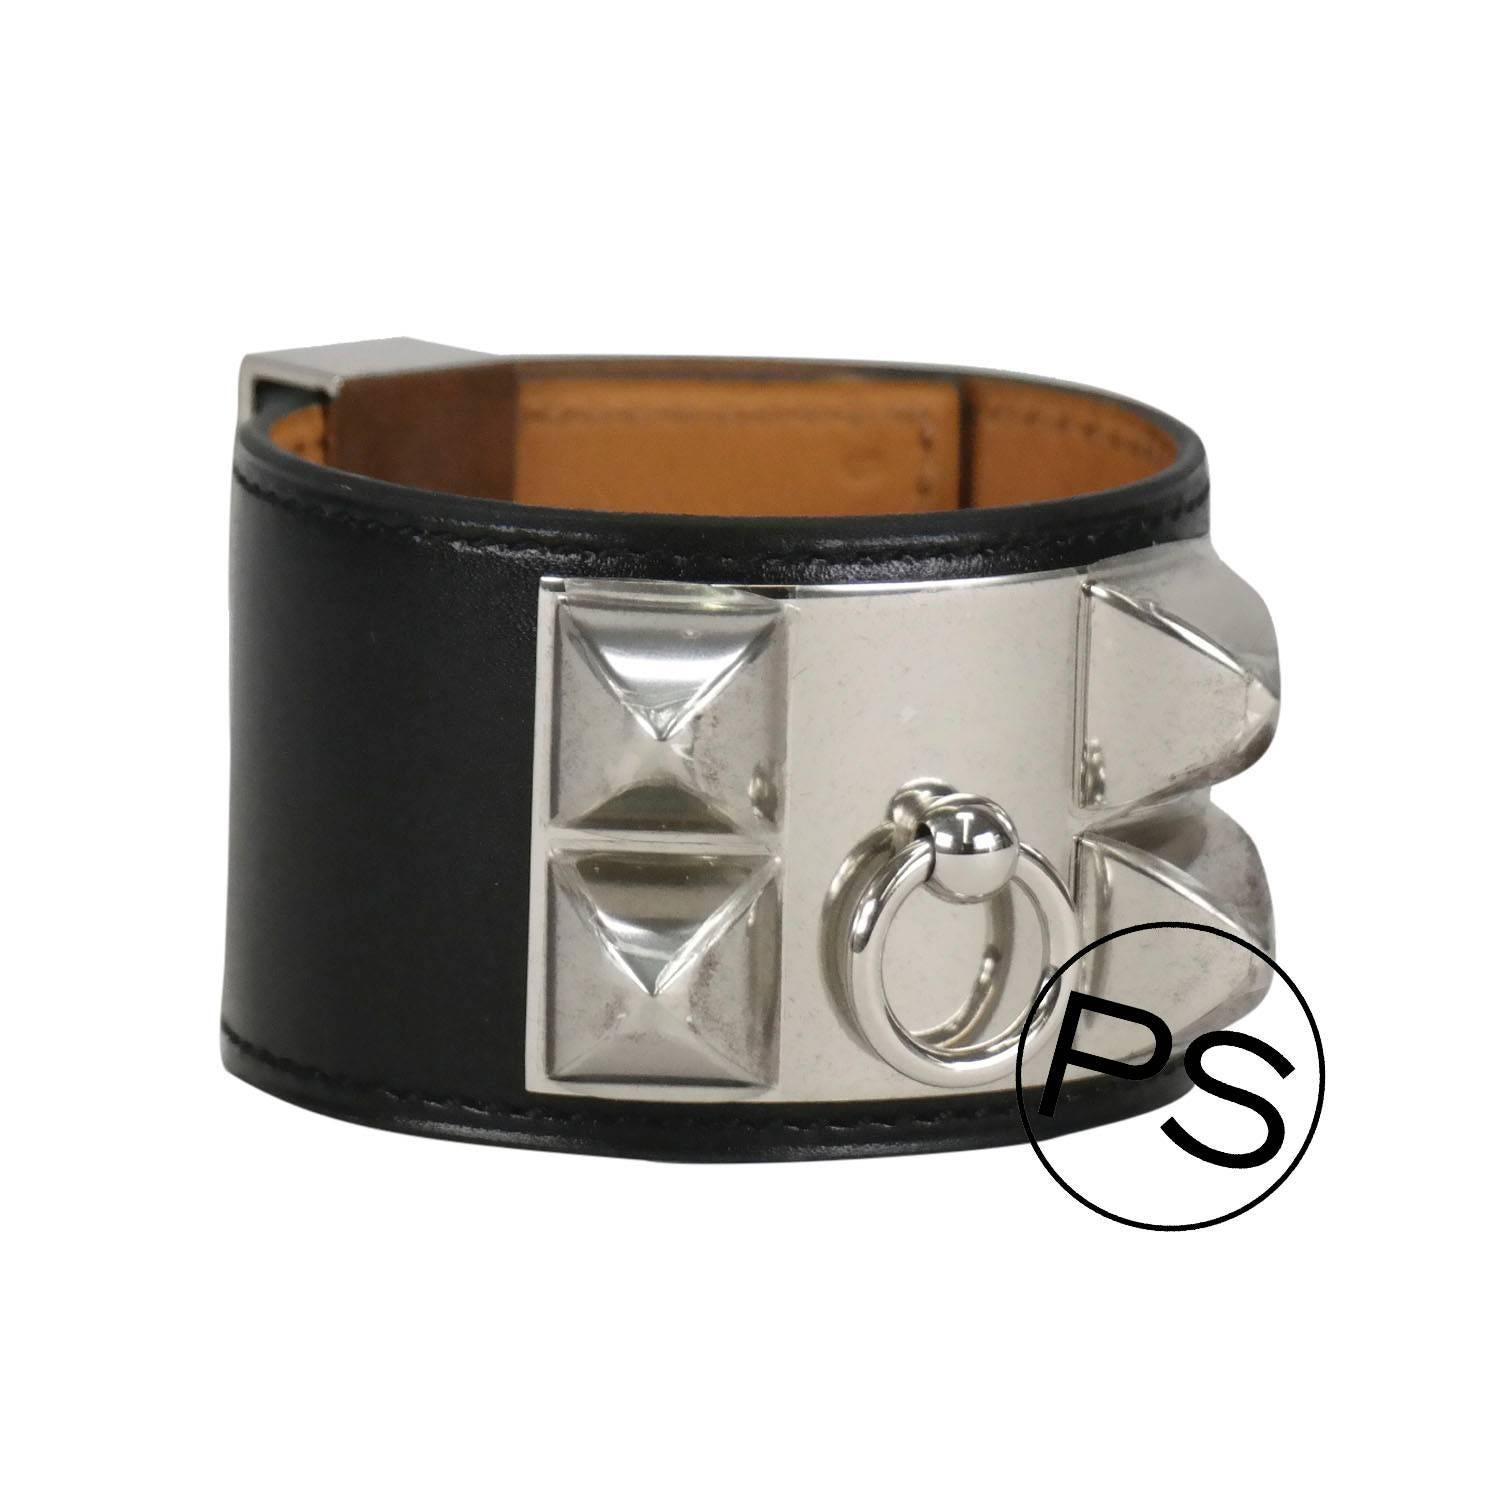 Artisan Hermès Collier de Chien Veau Chamonix Black Palladium Hardware Bracelet 